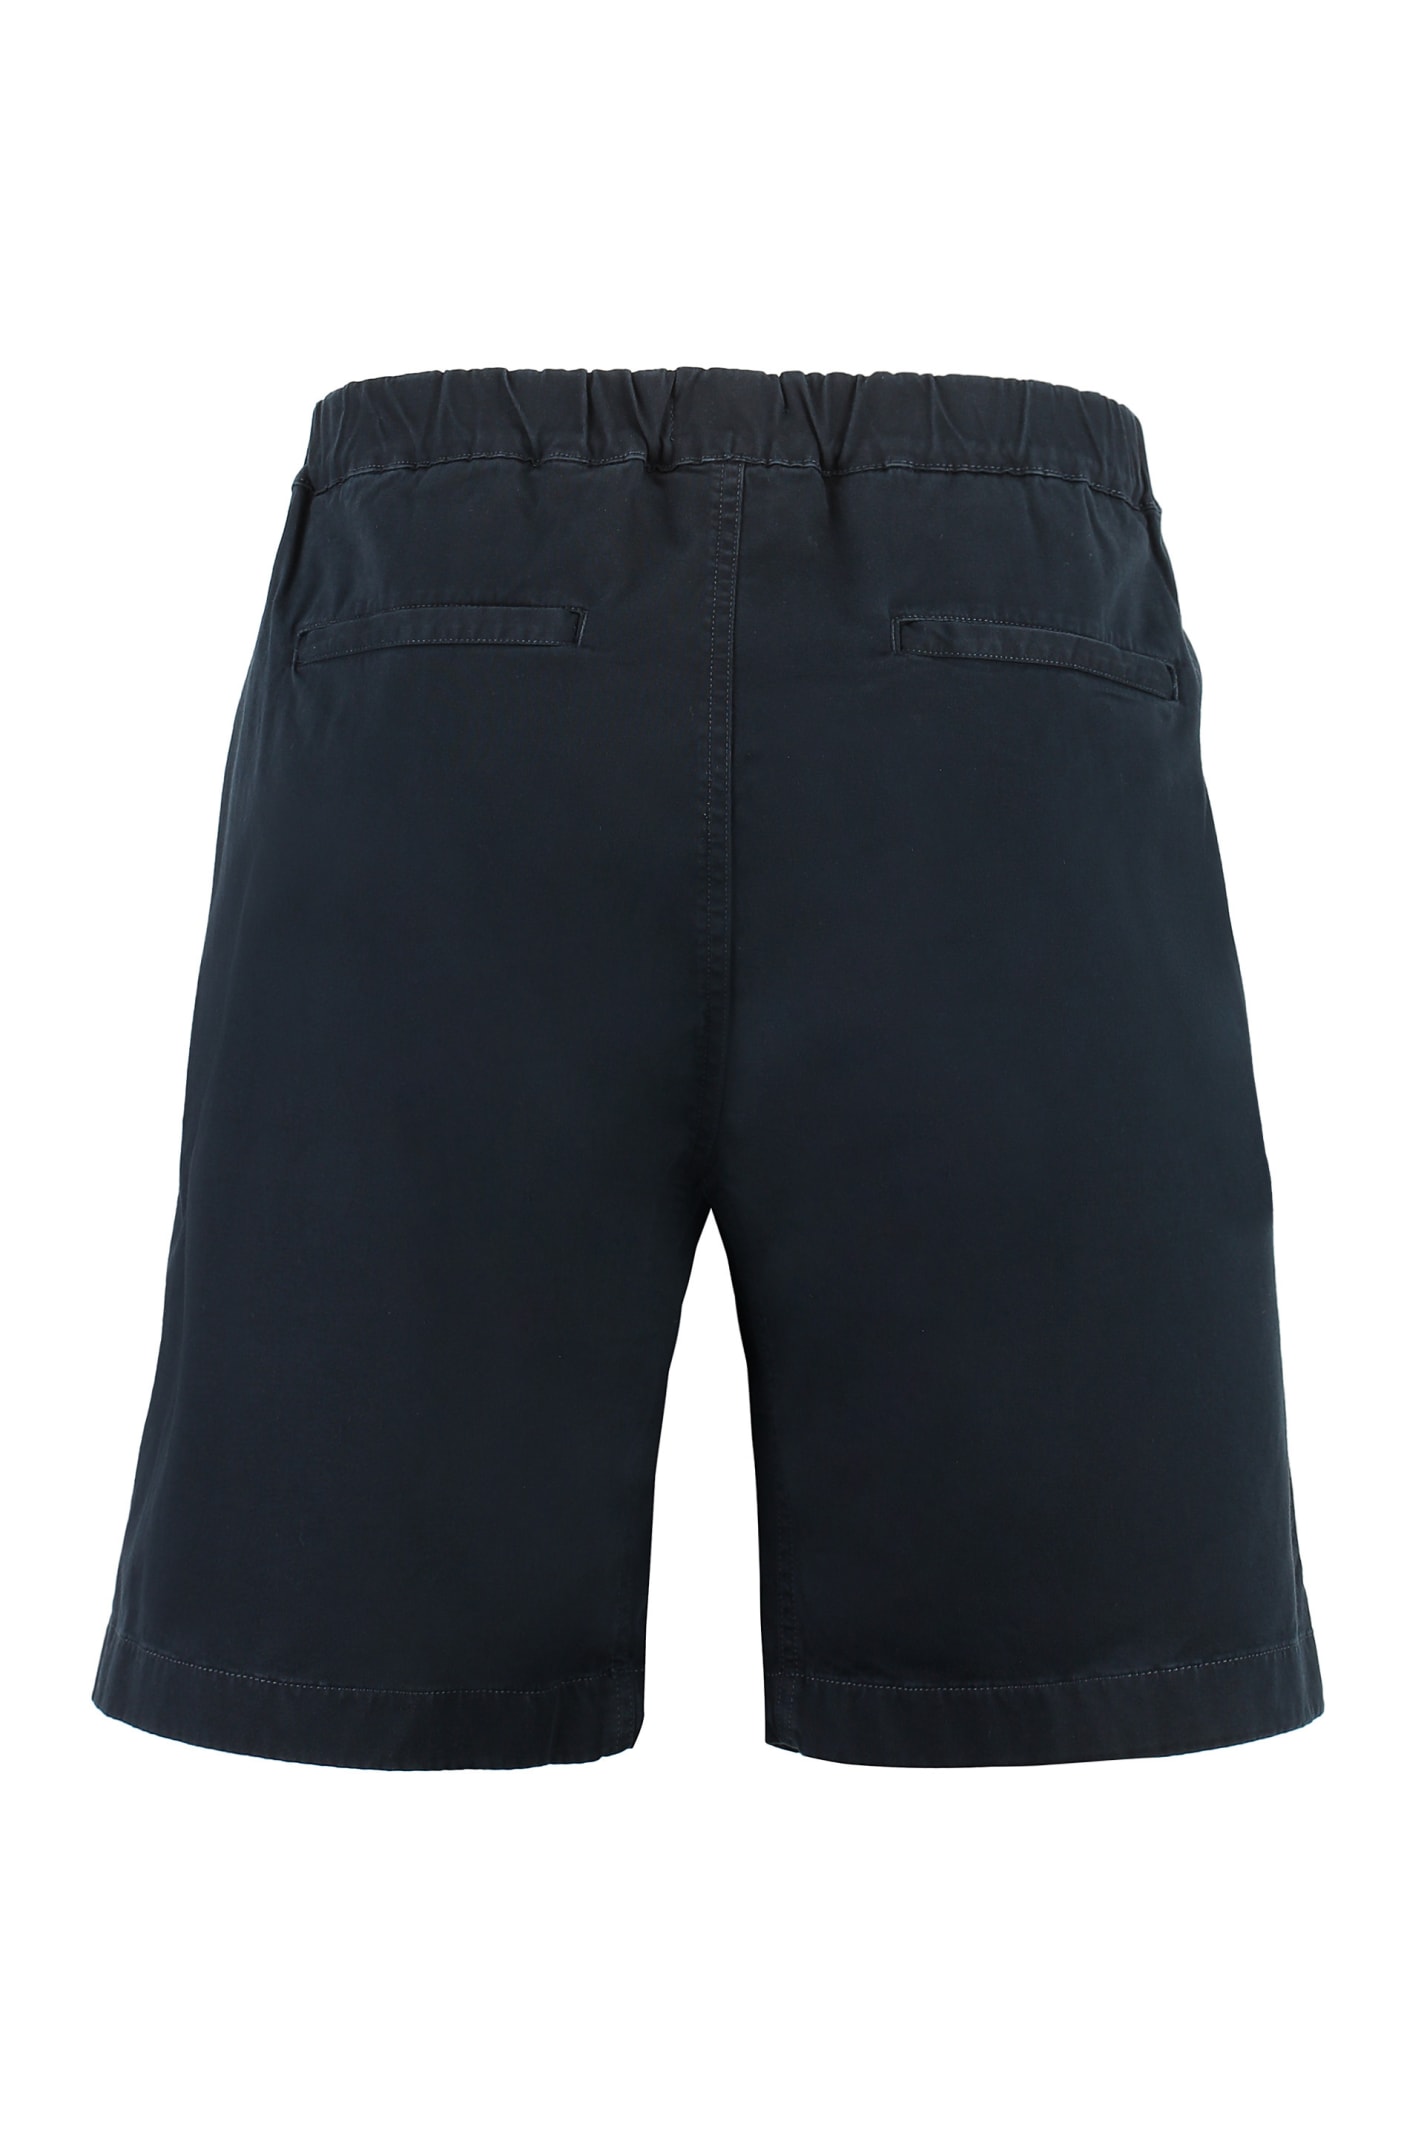 Shop Woolrich Cotton Shorts